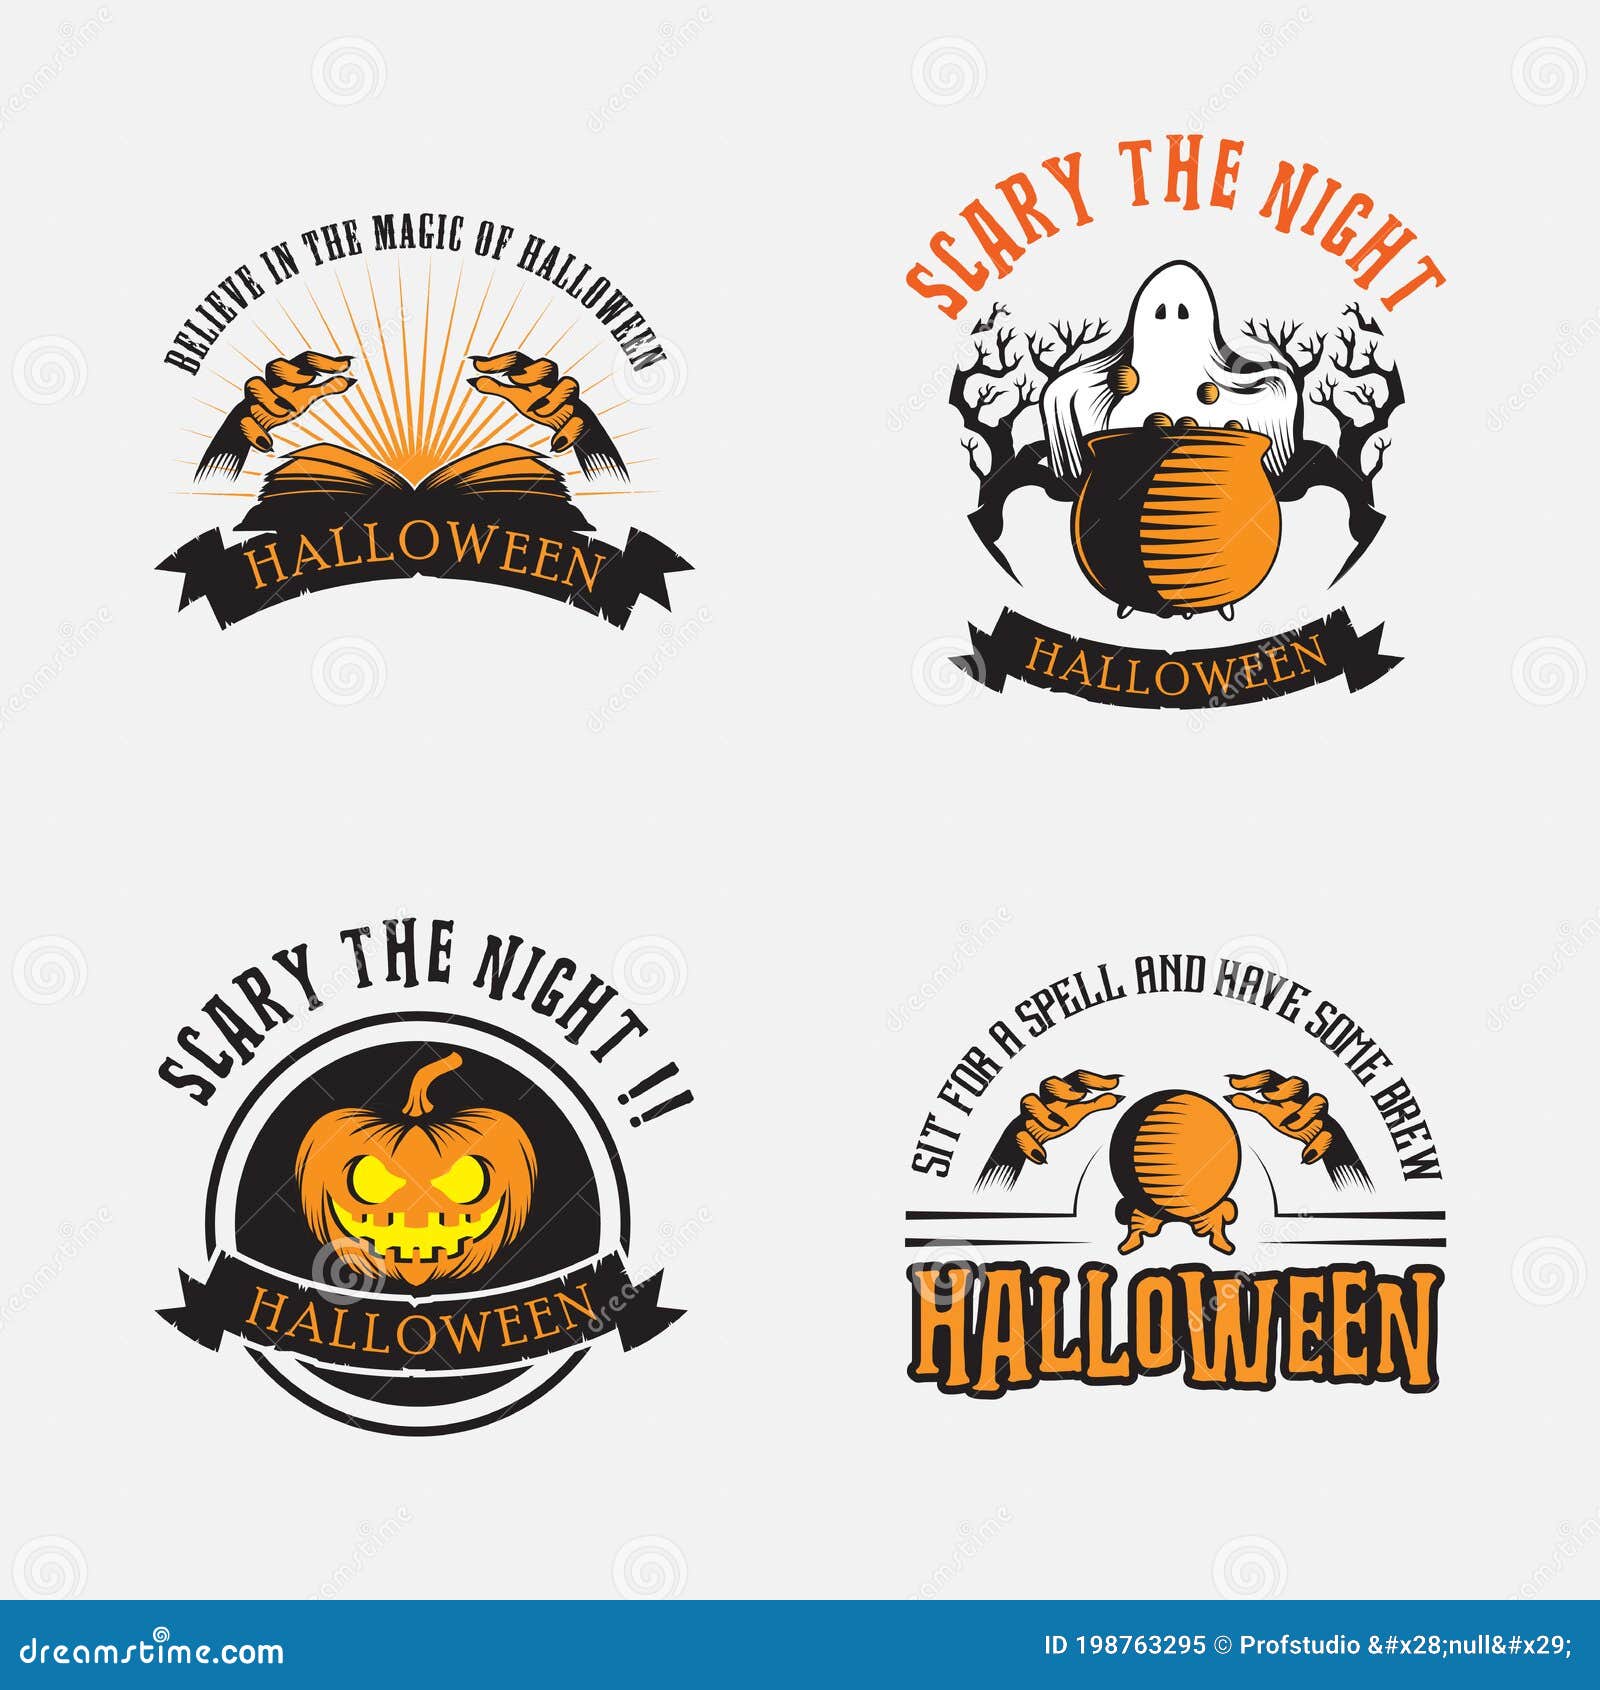 halloween logo ideas 4